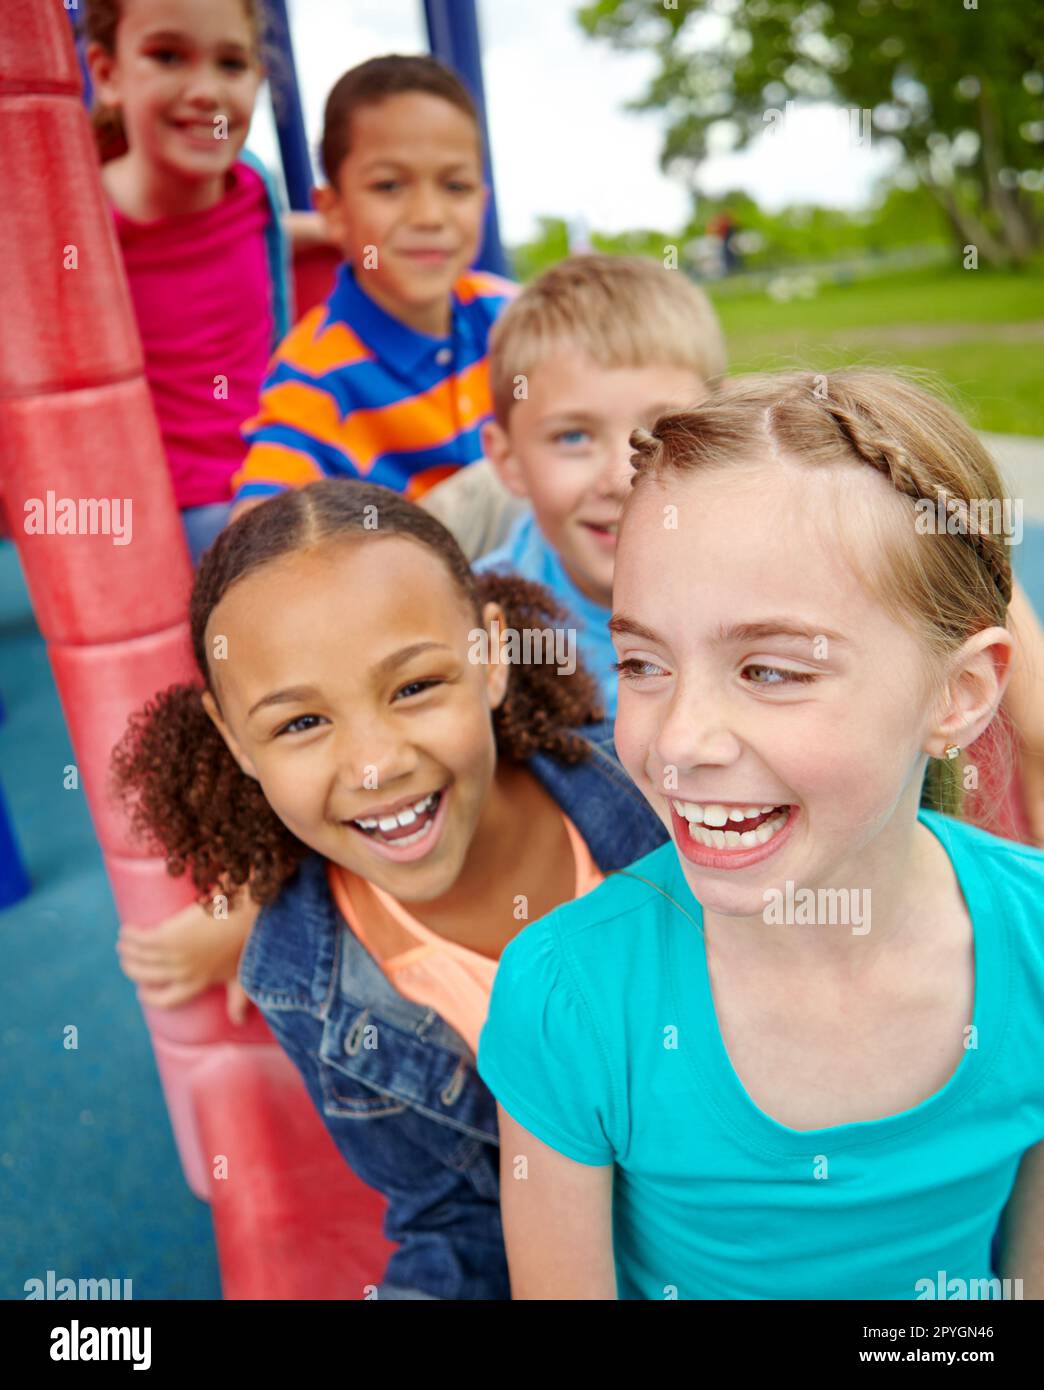 Godersi il tempo trascorso insieme. Un felice gruppo di bambini multietnici seduti felicemente su uno scivolo in un parco giochi. Foto Stock